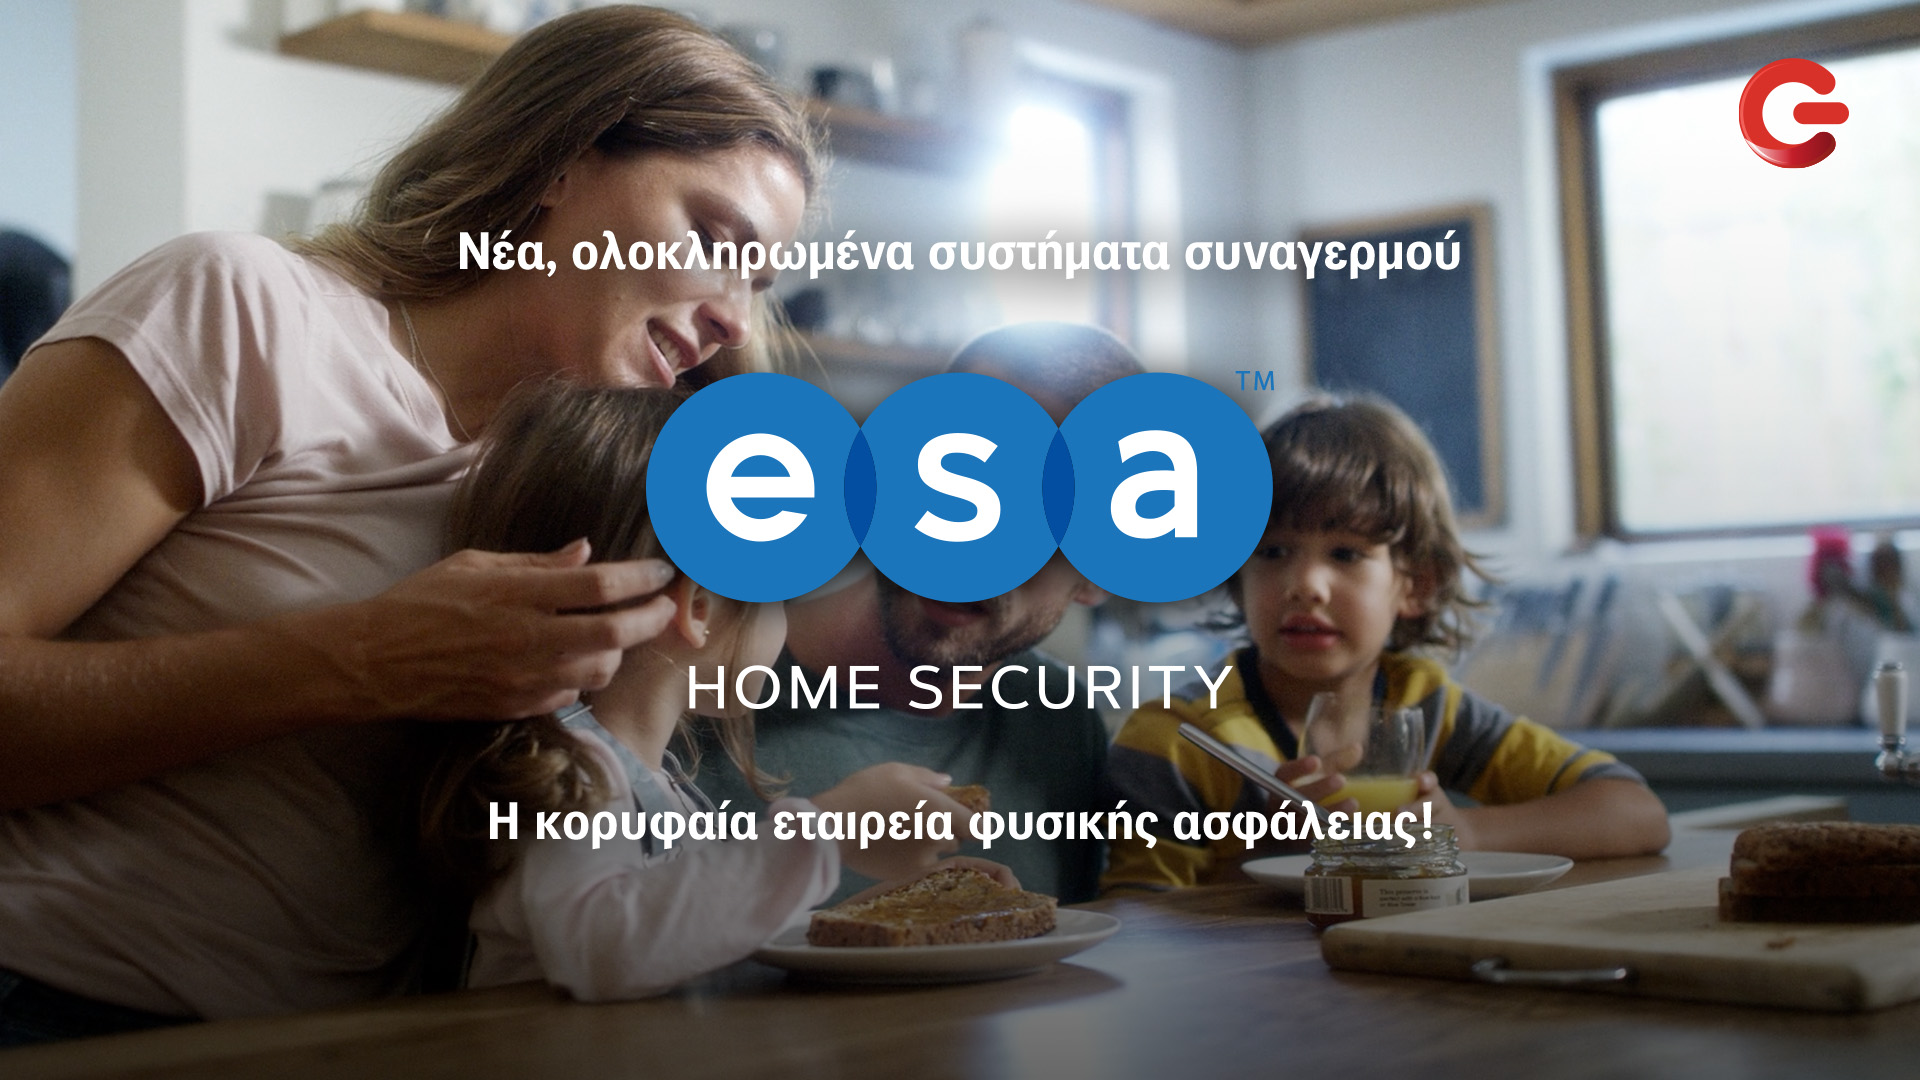 Αποκλειστικά σε Cosmote-Γερμανό τα συστήματα συναγερμού ESA Home Security